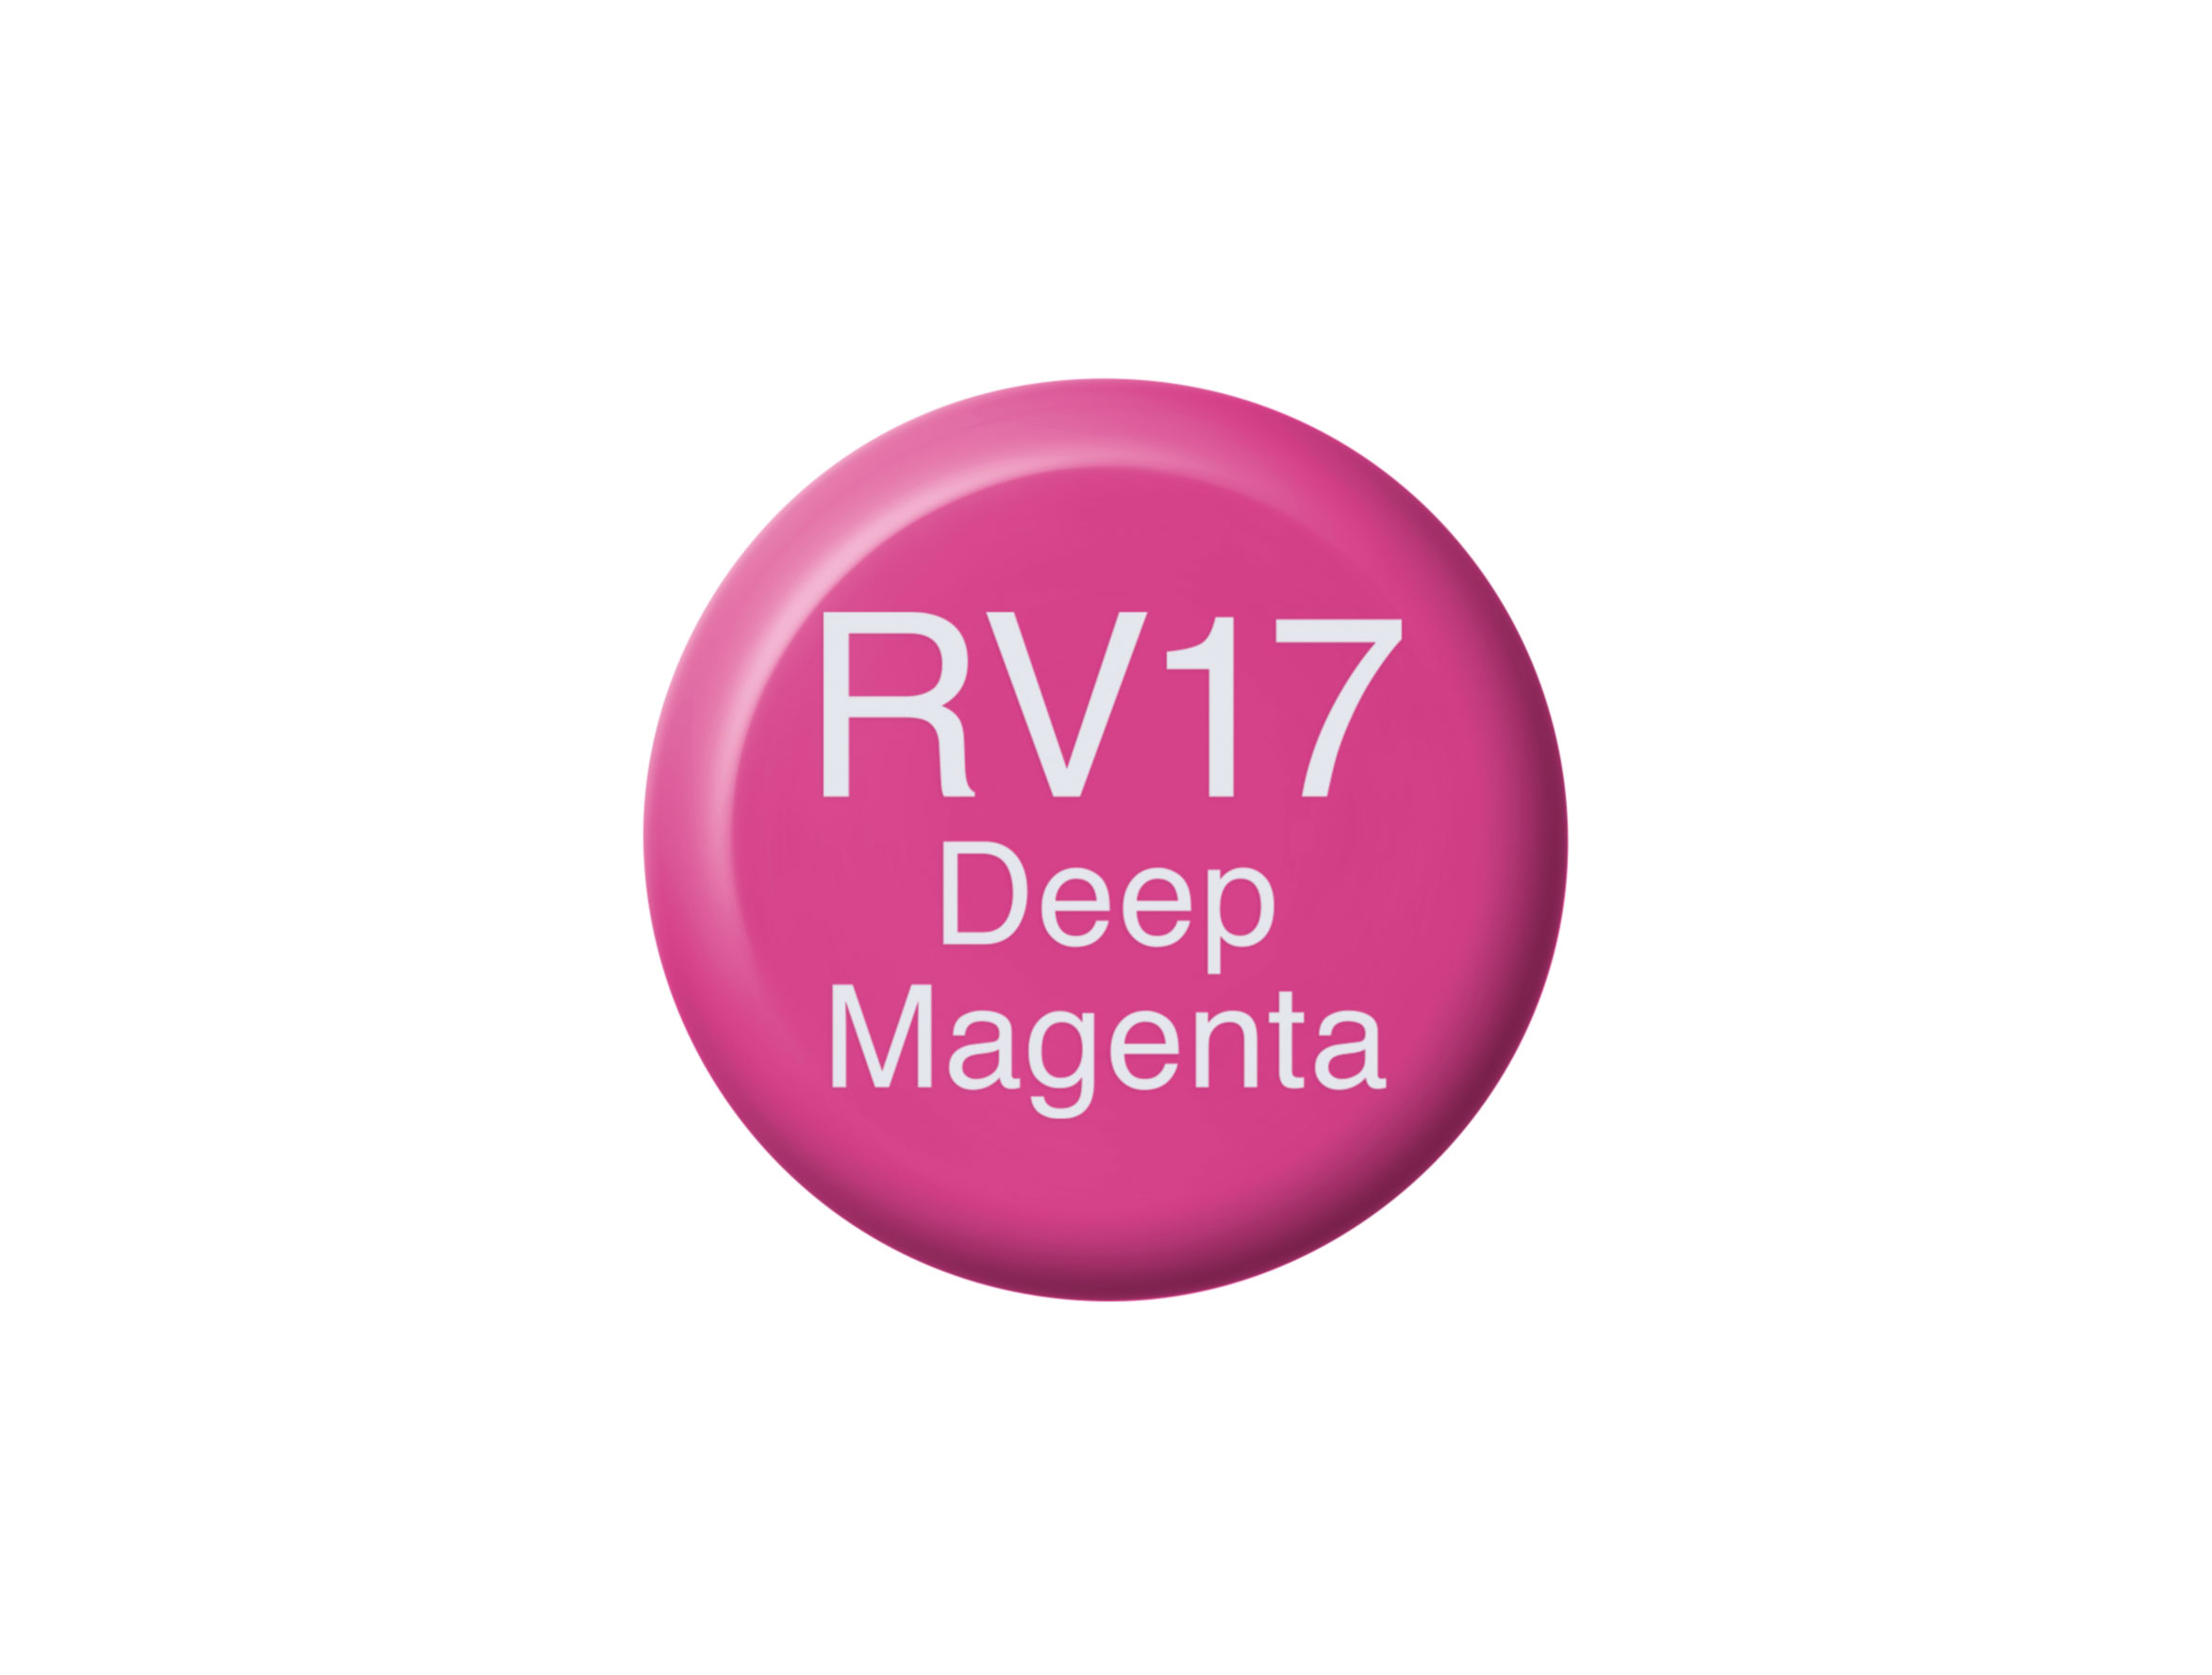 Copic Ink RV17 Deep Magenta